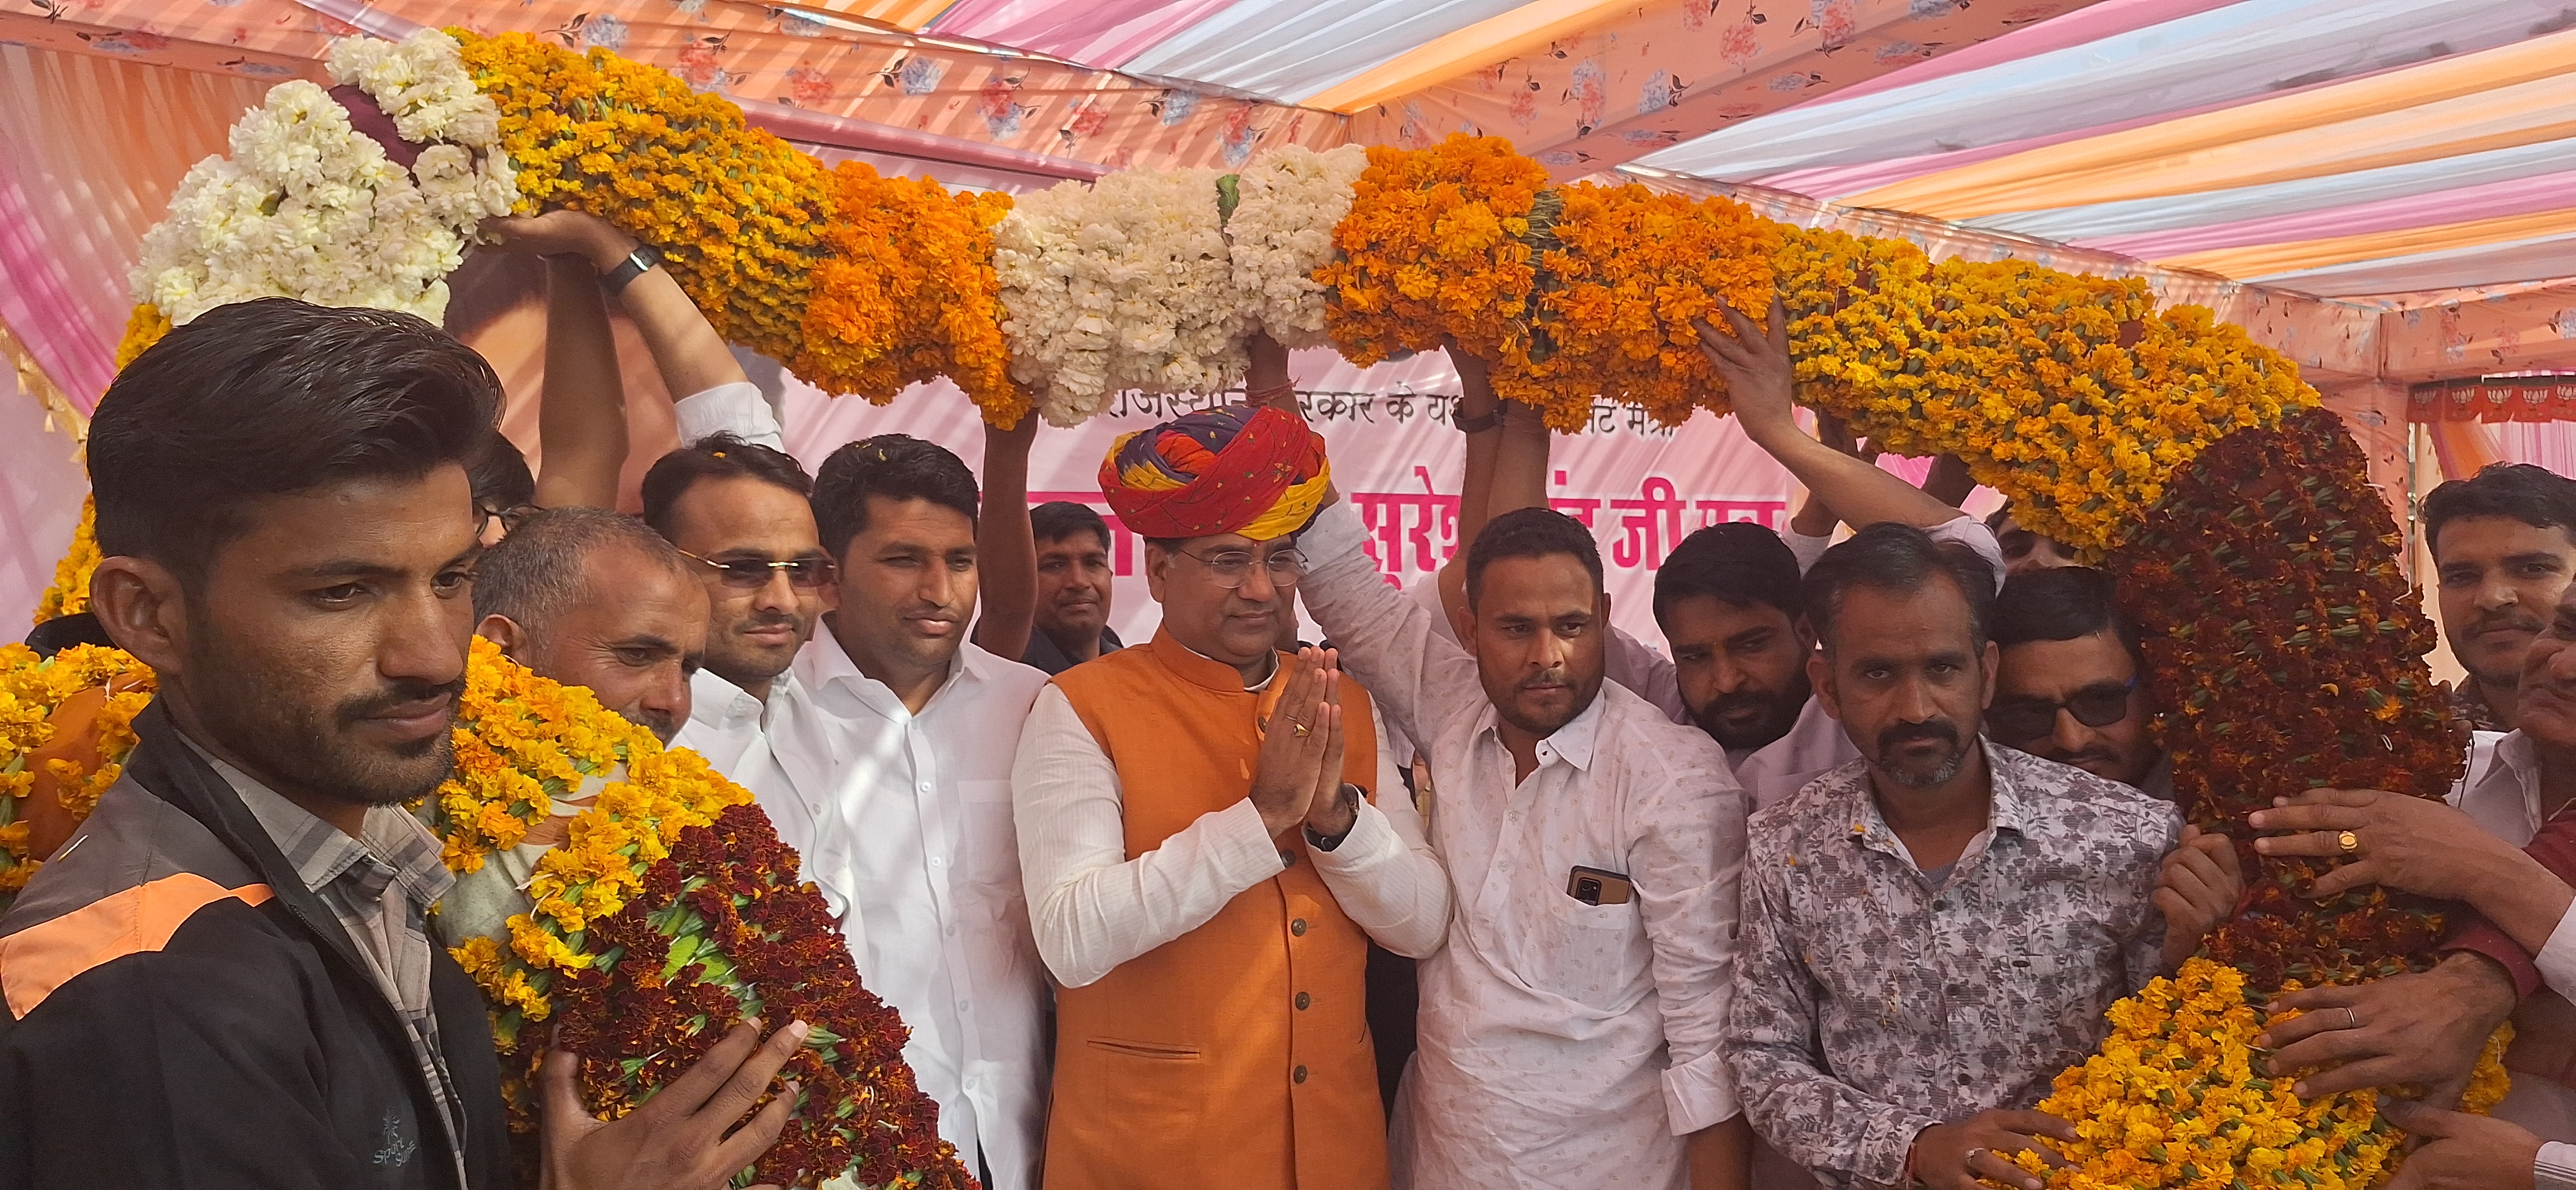 रूपनगढ़ के अटल चौक पर केबिनेट मंत्री सुरेश सिह रावत का रूपनगढ़ की जनता ने किया भव्य स्वागत  हजारों की संख्या मे ग्रामीणों ने एकत्रित होकर केबिनेट मंत्री का किया स्वागत  रूपनगढ़ के पुर्व सरपंच डीसीवी किरण ,पनेर के मागीलाल बागडा ,भदुण के अनिल चौधरी ,अमरपुरा के पुर्व सरपंच मन मोहन सिंह, रूपनगढ के पुर्व सरपंच भगवान सिह लखन ,अर्चना सुराणा कोटडी के पुर्व सरपंच बनवारी लाल शर्मा ,तथा कोटडी सरपंच, पीगलोद सरपंच ,त्योद सरपंच ,आदी जनप्रतिनिधि है मौजूद